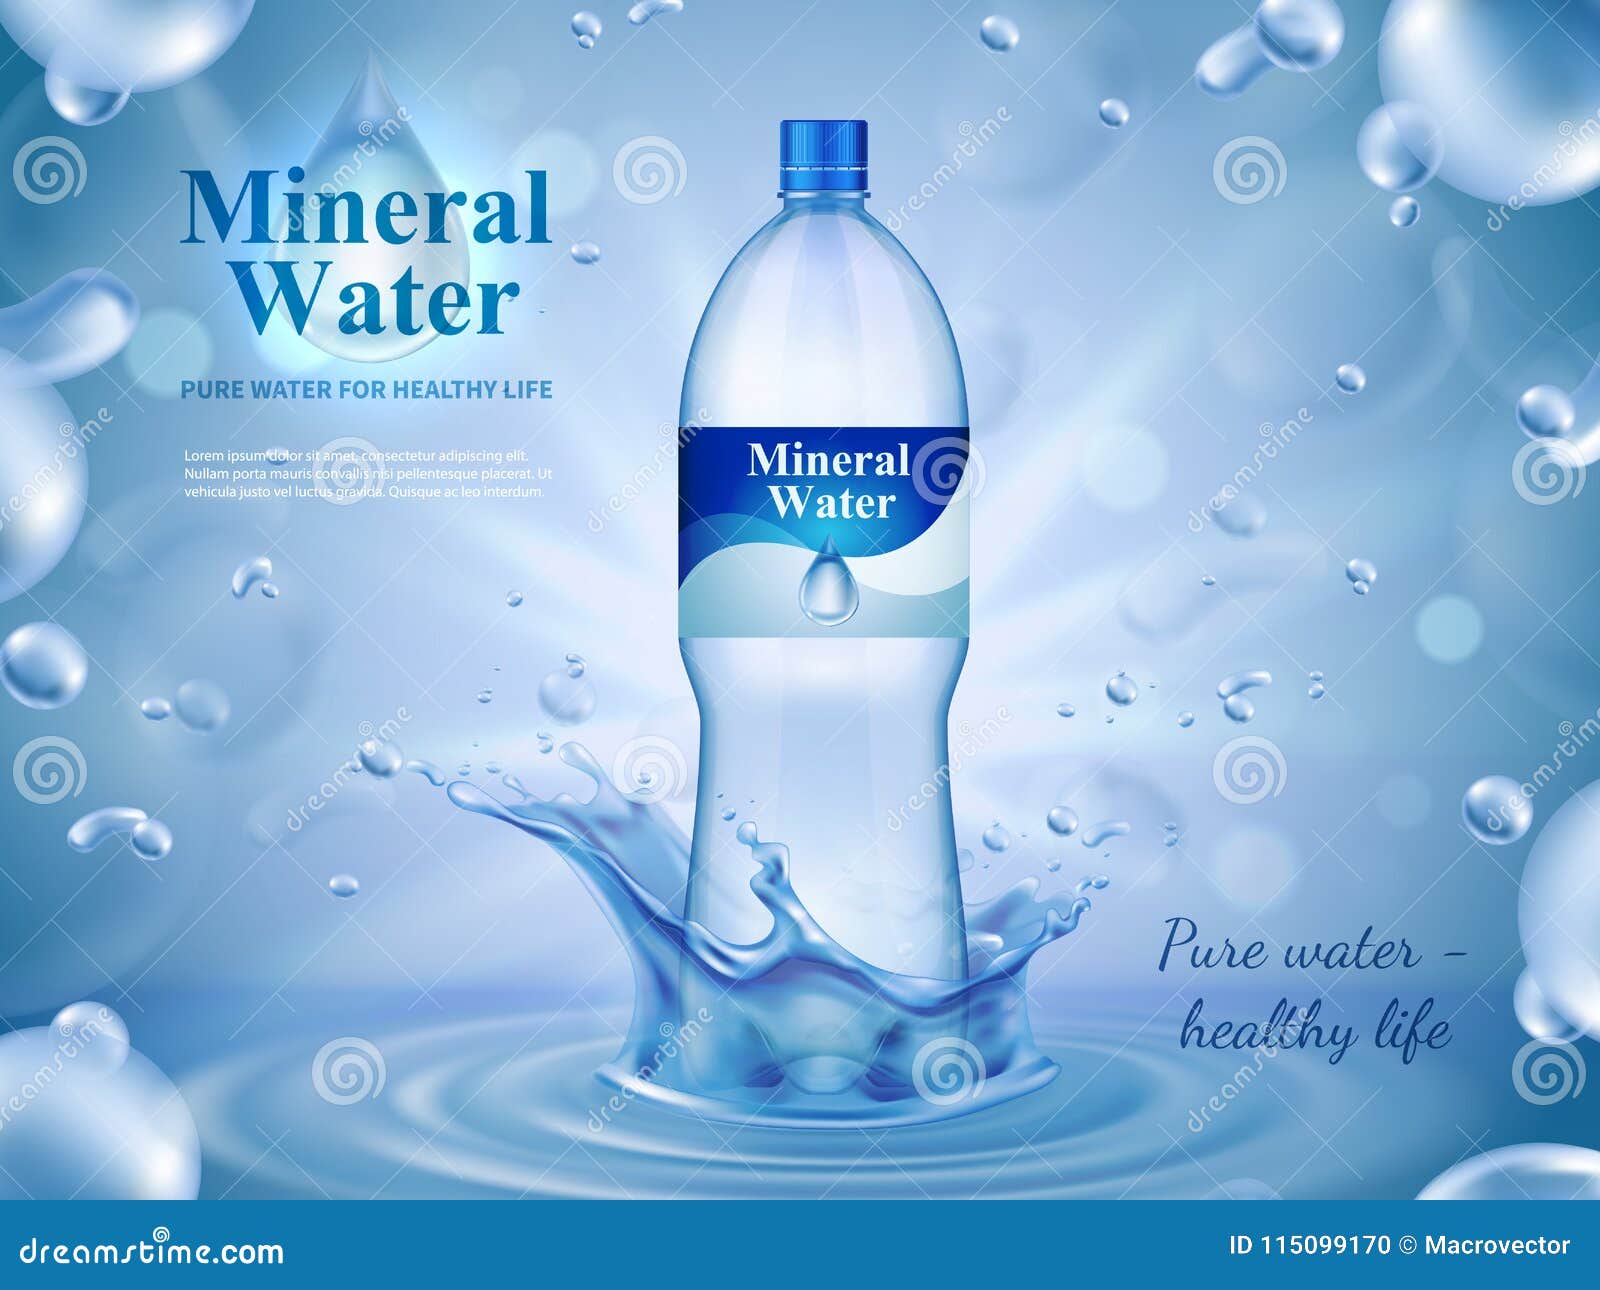 Publicidad De Agua Mineral Agua Mineral Natural 4663